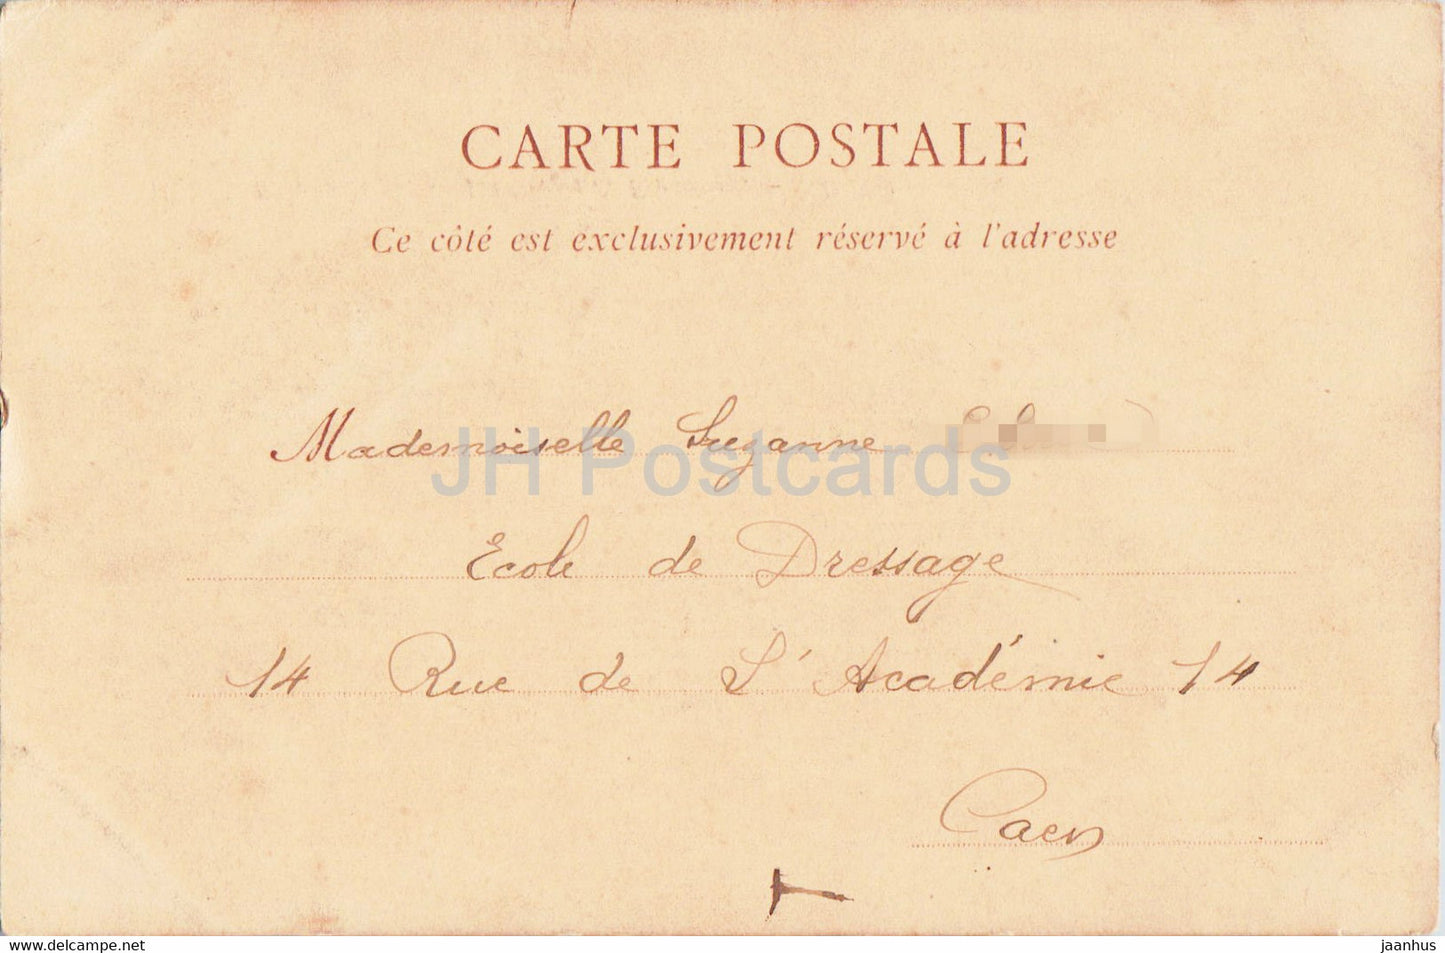 Foret de Fontainebleau - Les Gorges de Franchard - 60 - alte Postkarte - Frankreich - gebraucht